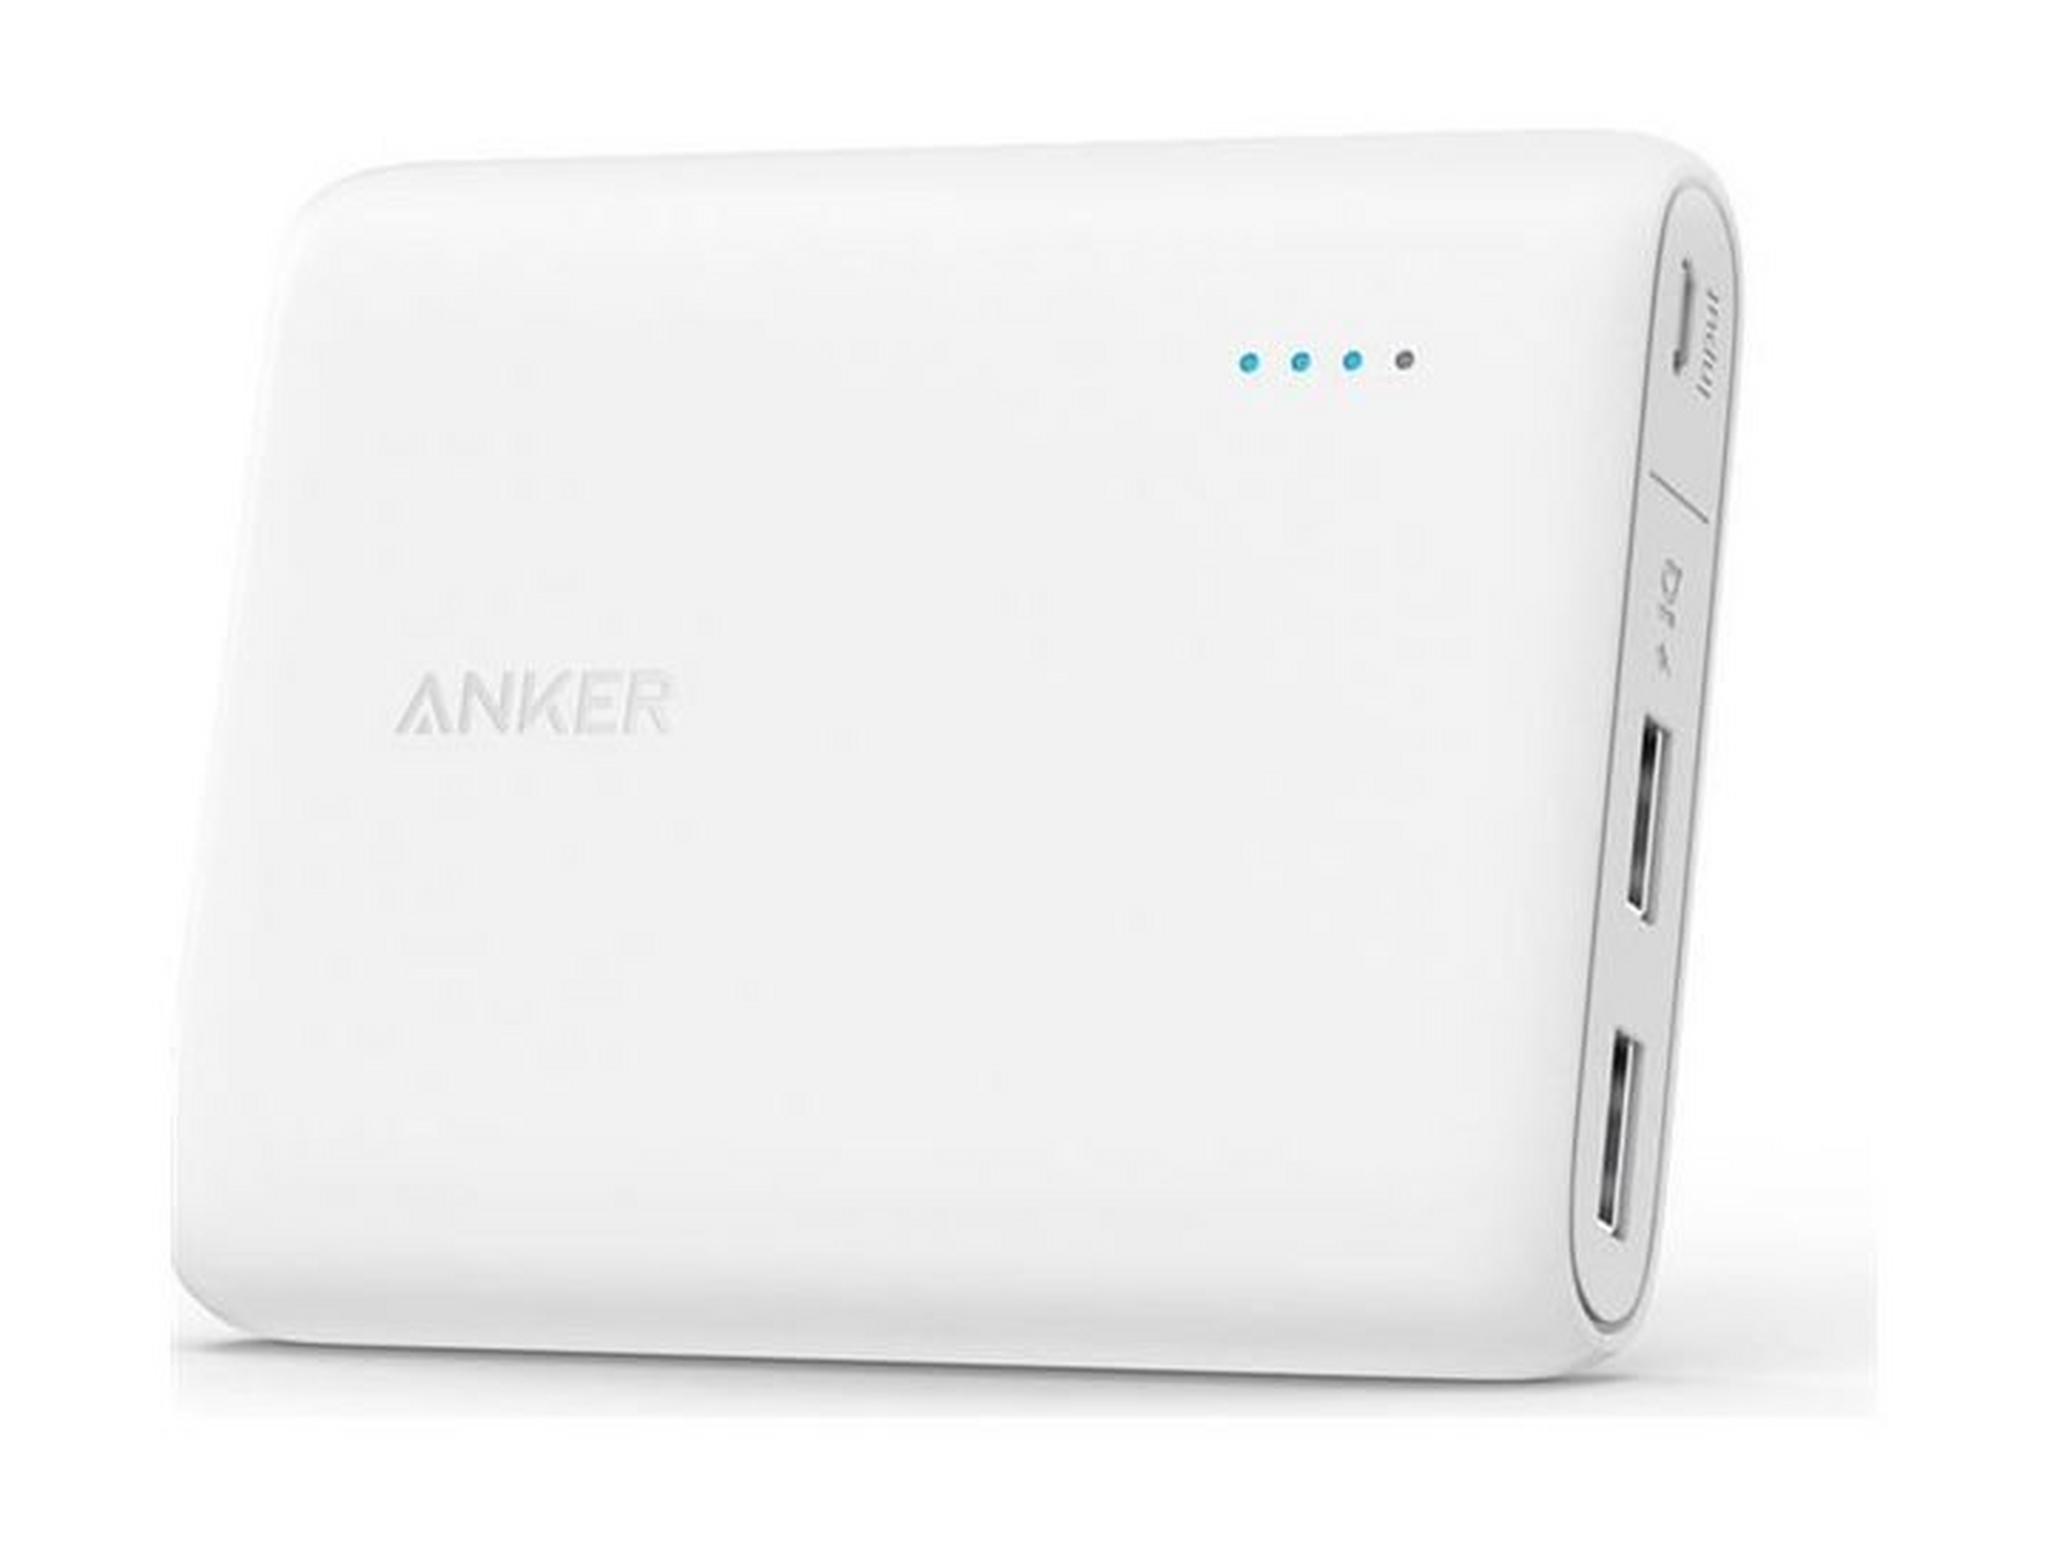 Anker PowerCore 10400 mAh Portable Power Bank - White